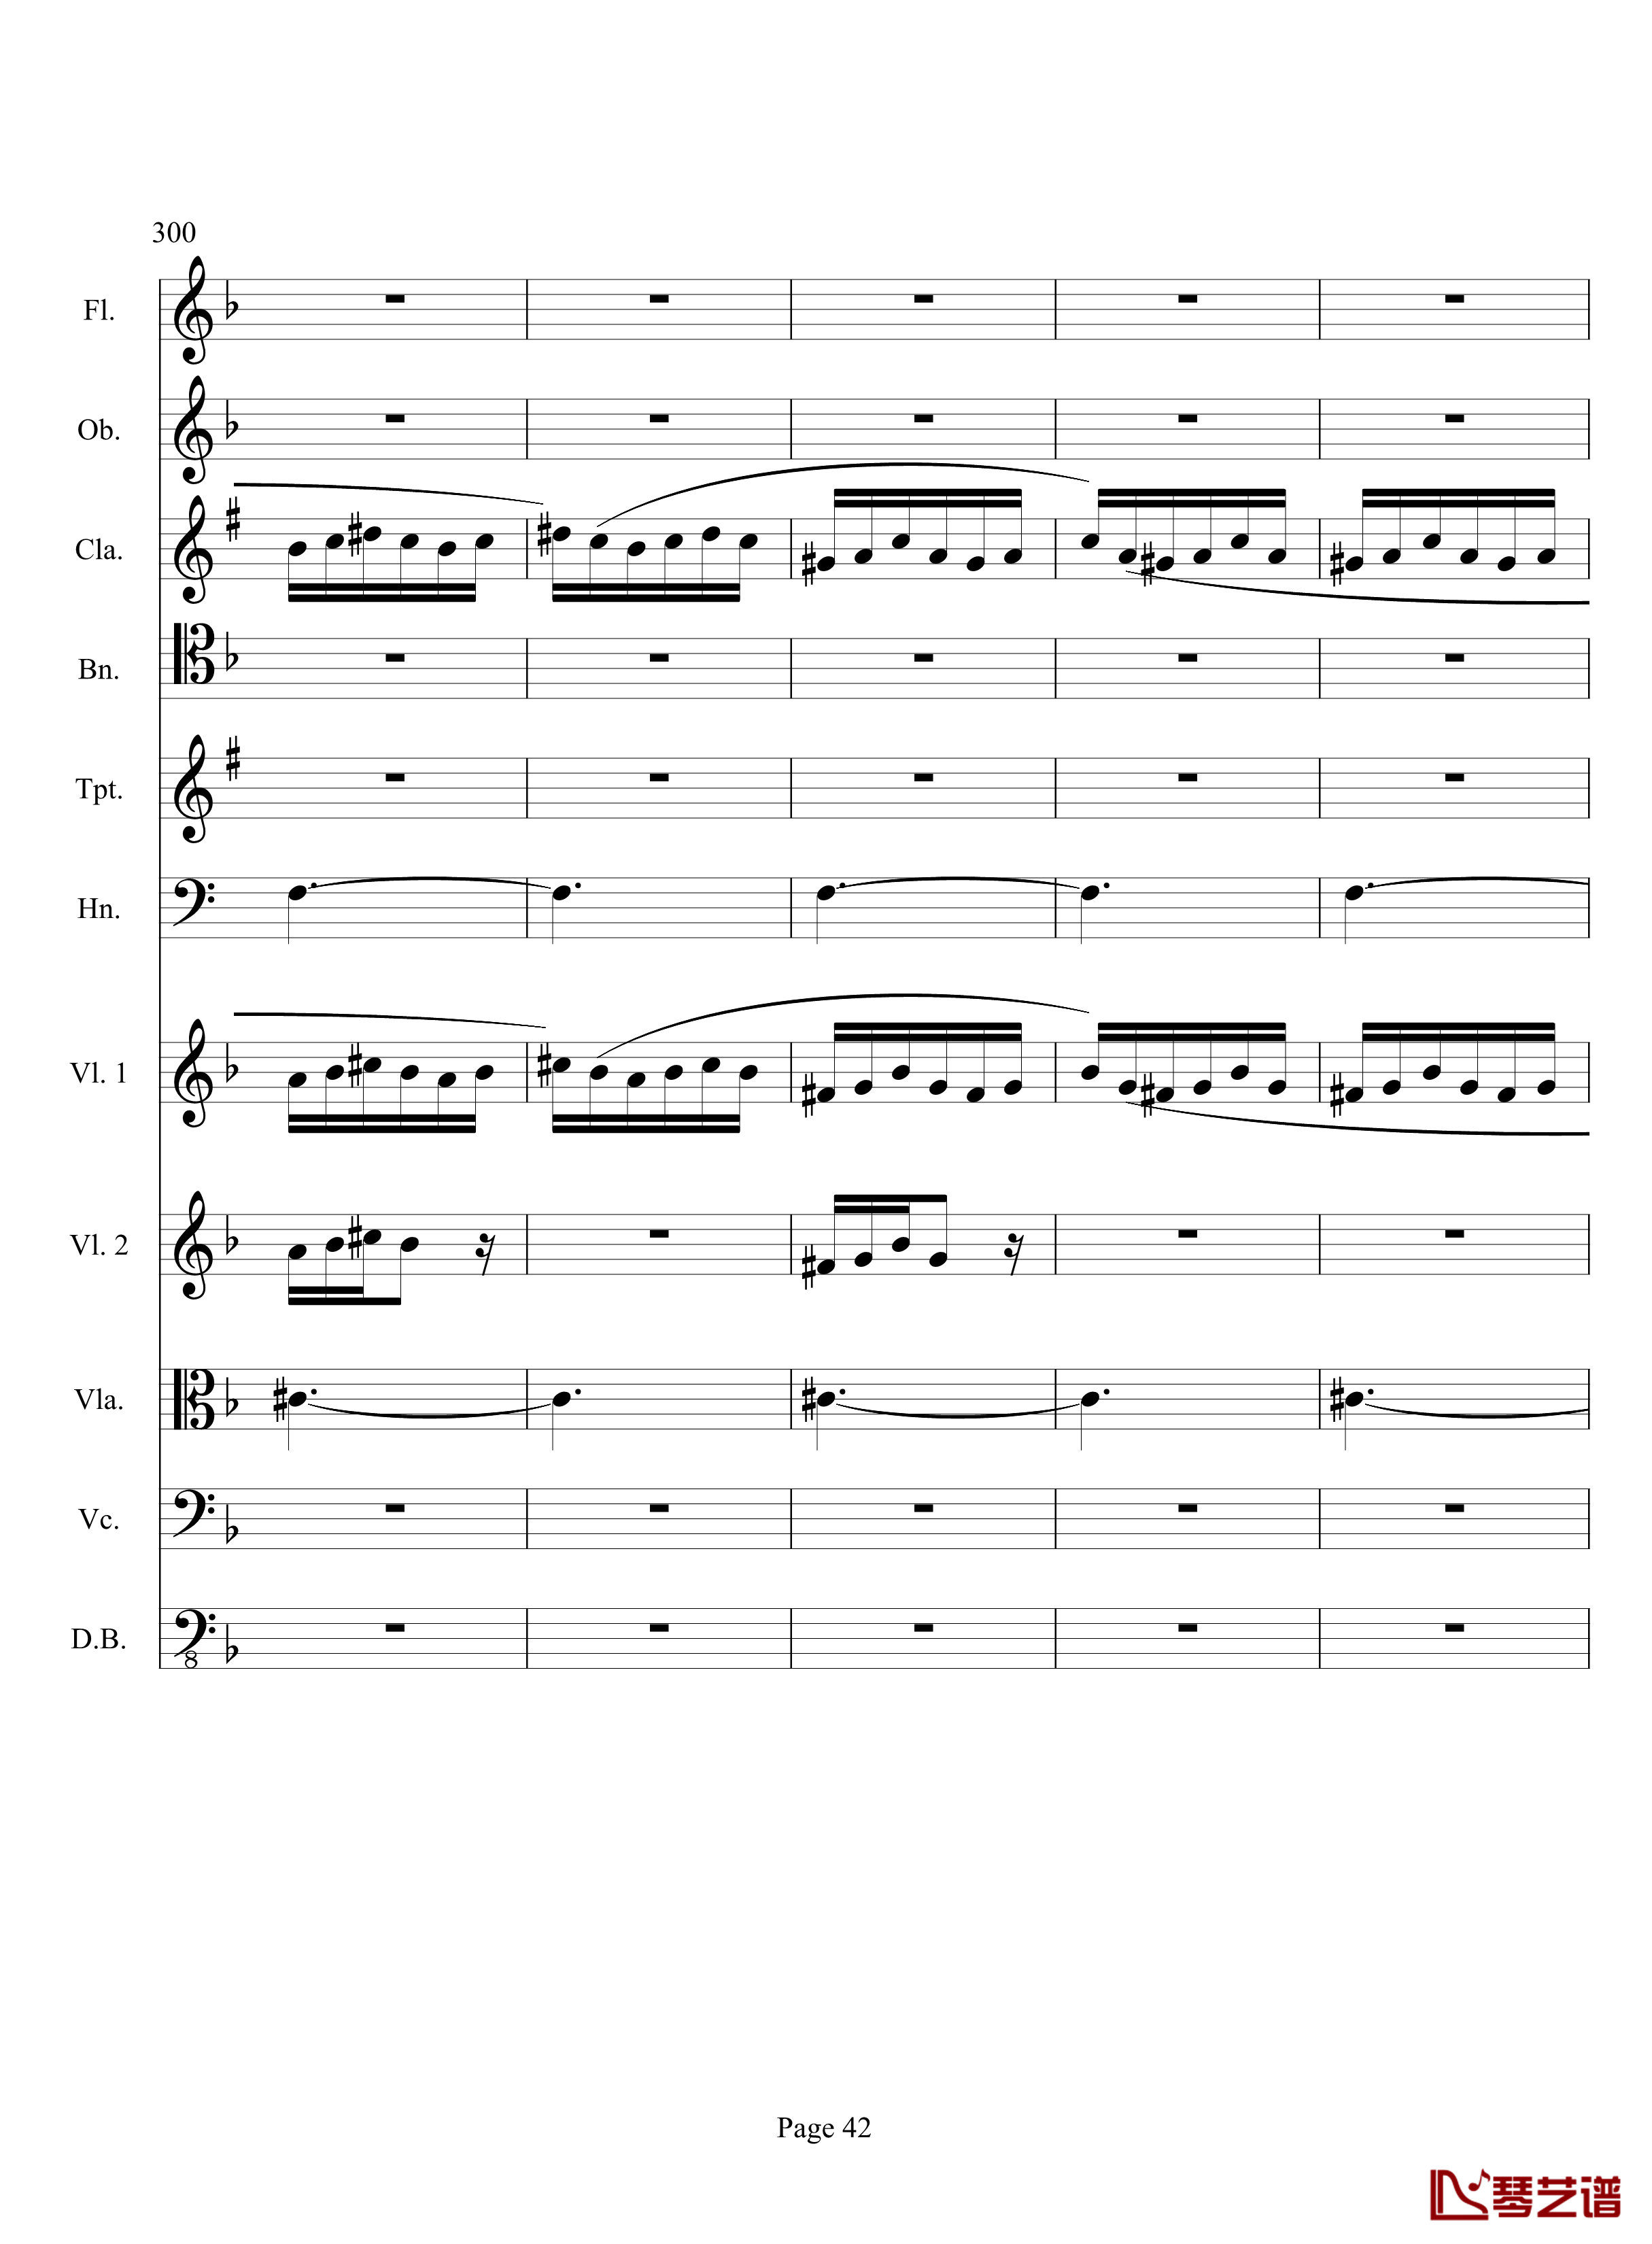 奏鸣曲之交响钢琴谱-第17首-Ⅲ-贝多芬-beethoven42